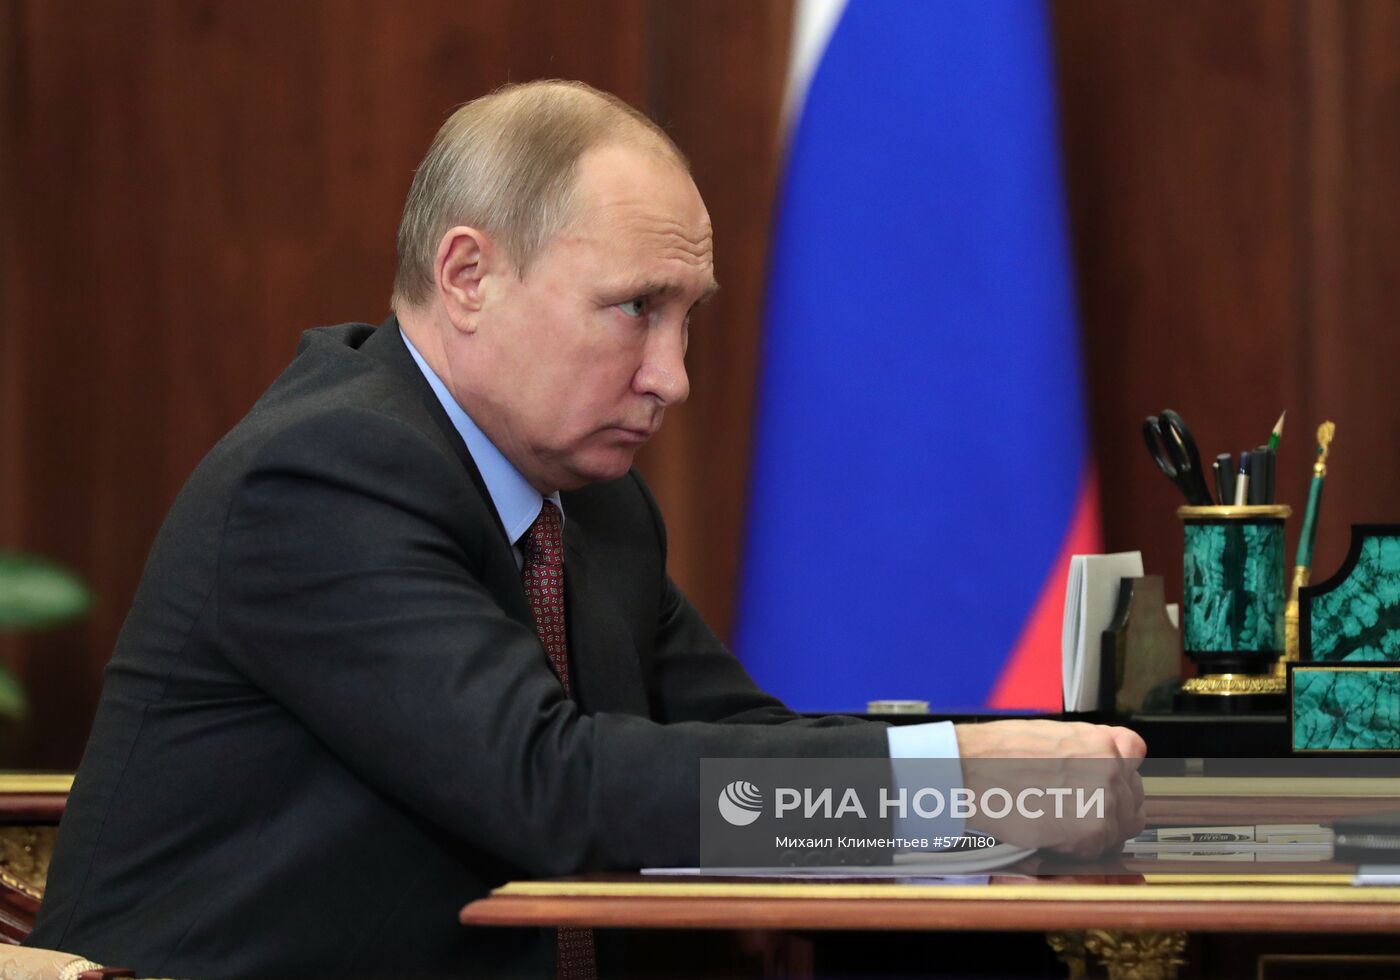 Рабочая встреча президента РФ В. Путина с главой "Роскосмоса" Д. Рогозиным